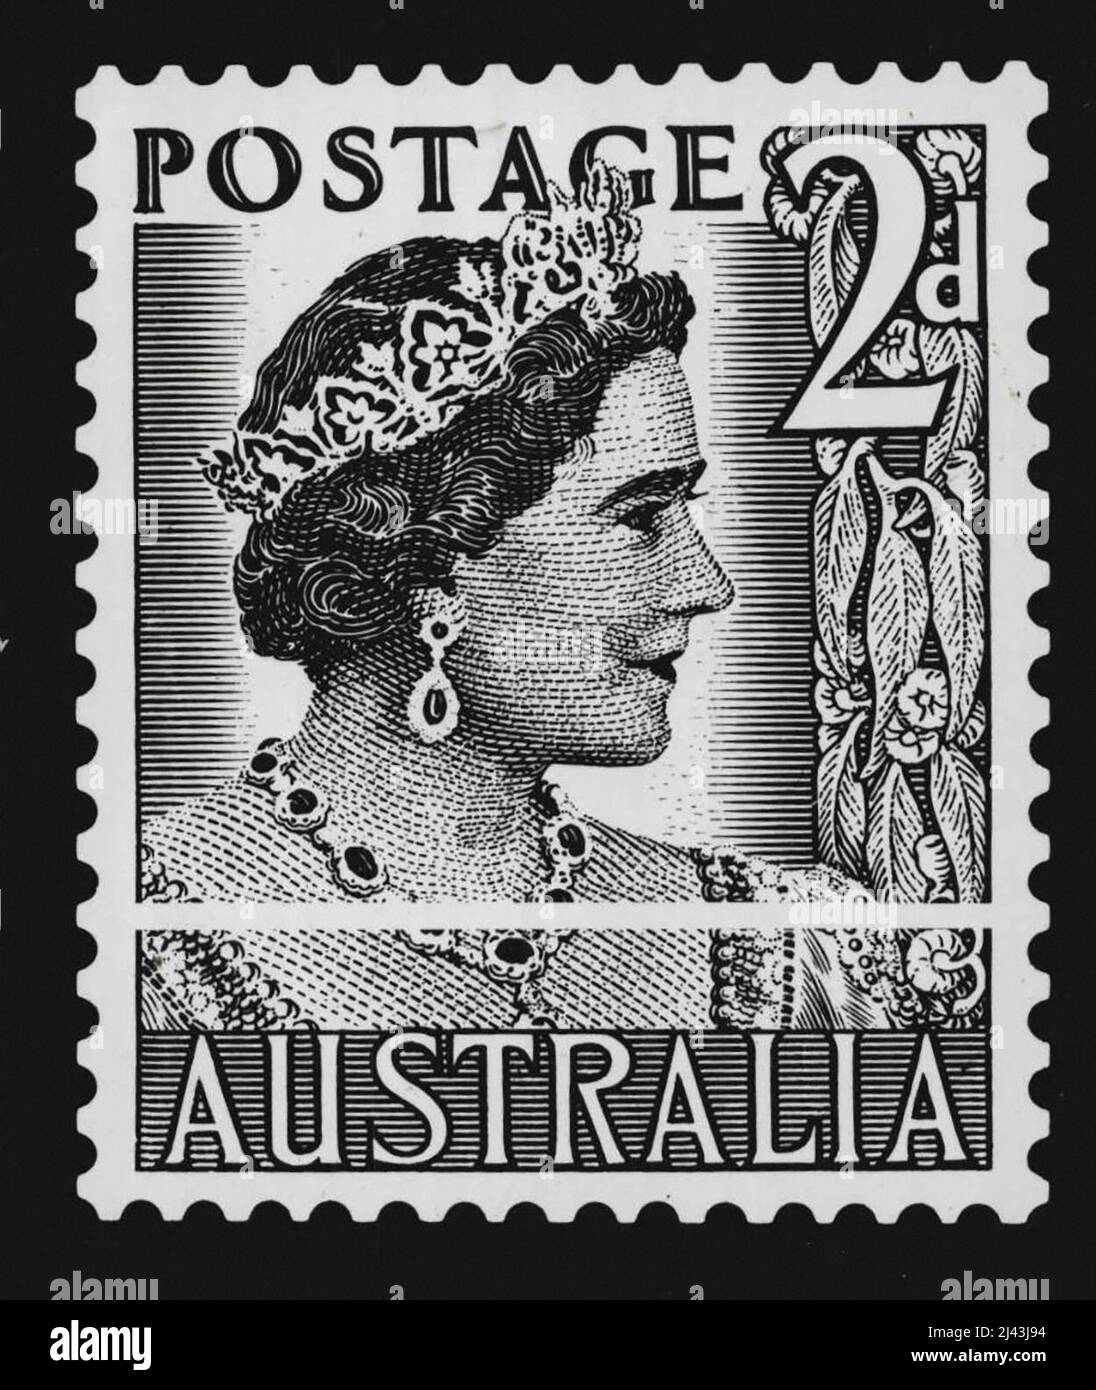 Francobolli australiani immagini e fotografie stock ad alta risoluzione -  Alamy